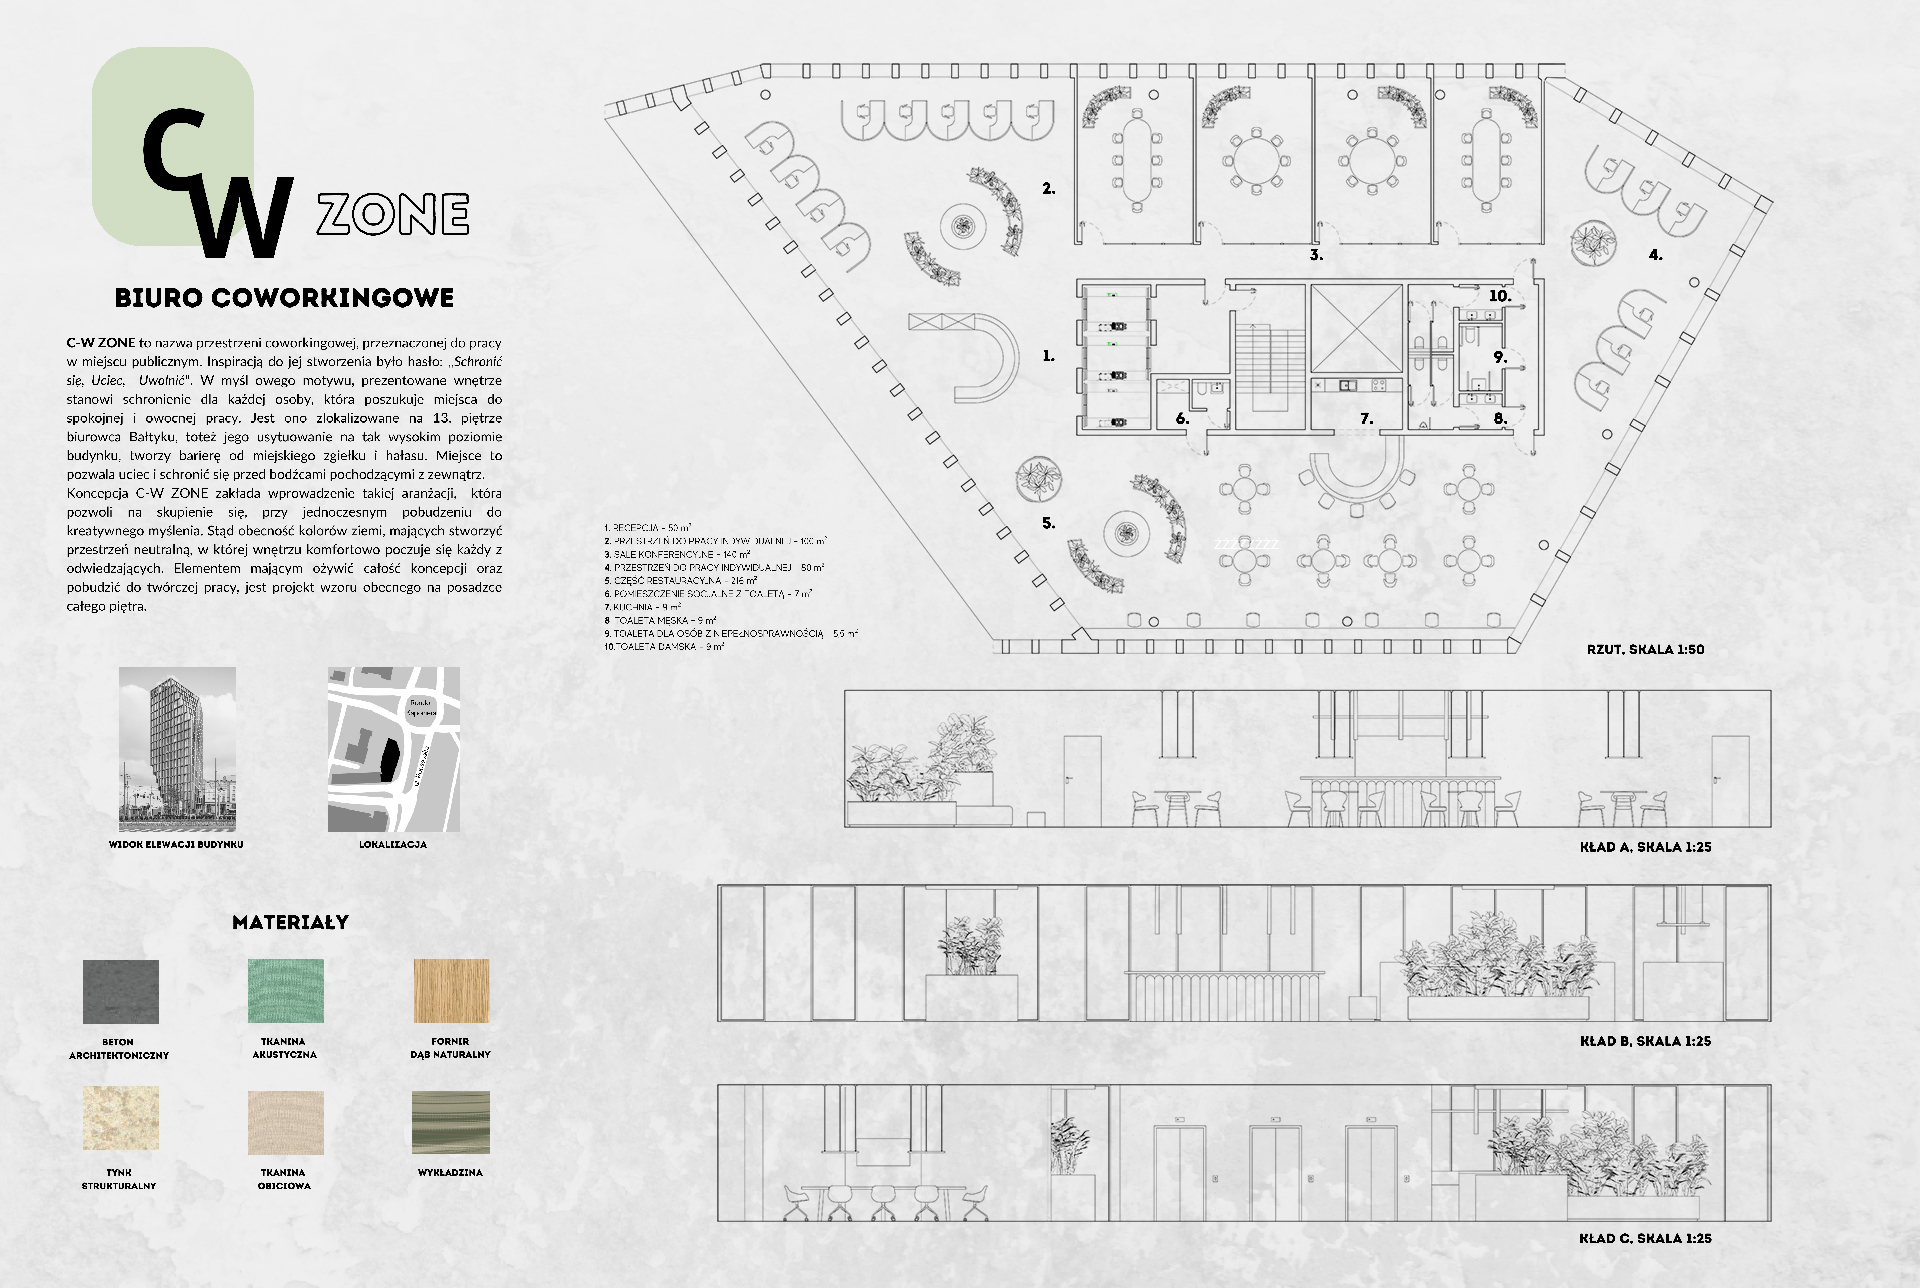 Projekt koncepcyjny wnętrz CW ZONE - biura coworkingowego zawierający mapę lokalizacyjną budynku Bałtyk w Poznaniu, próbki materiałów użytych we wnętrzach oraz rzut i kłady.